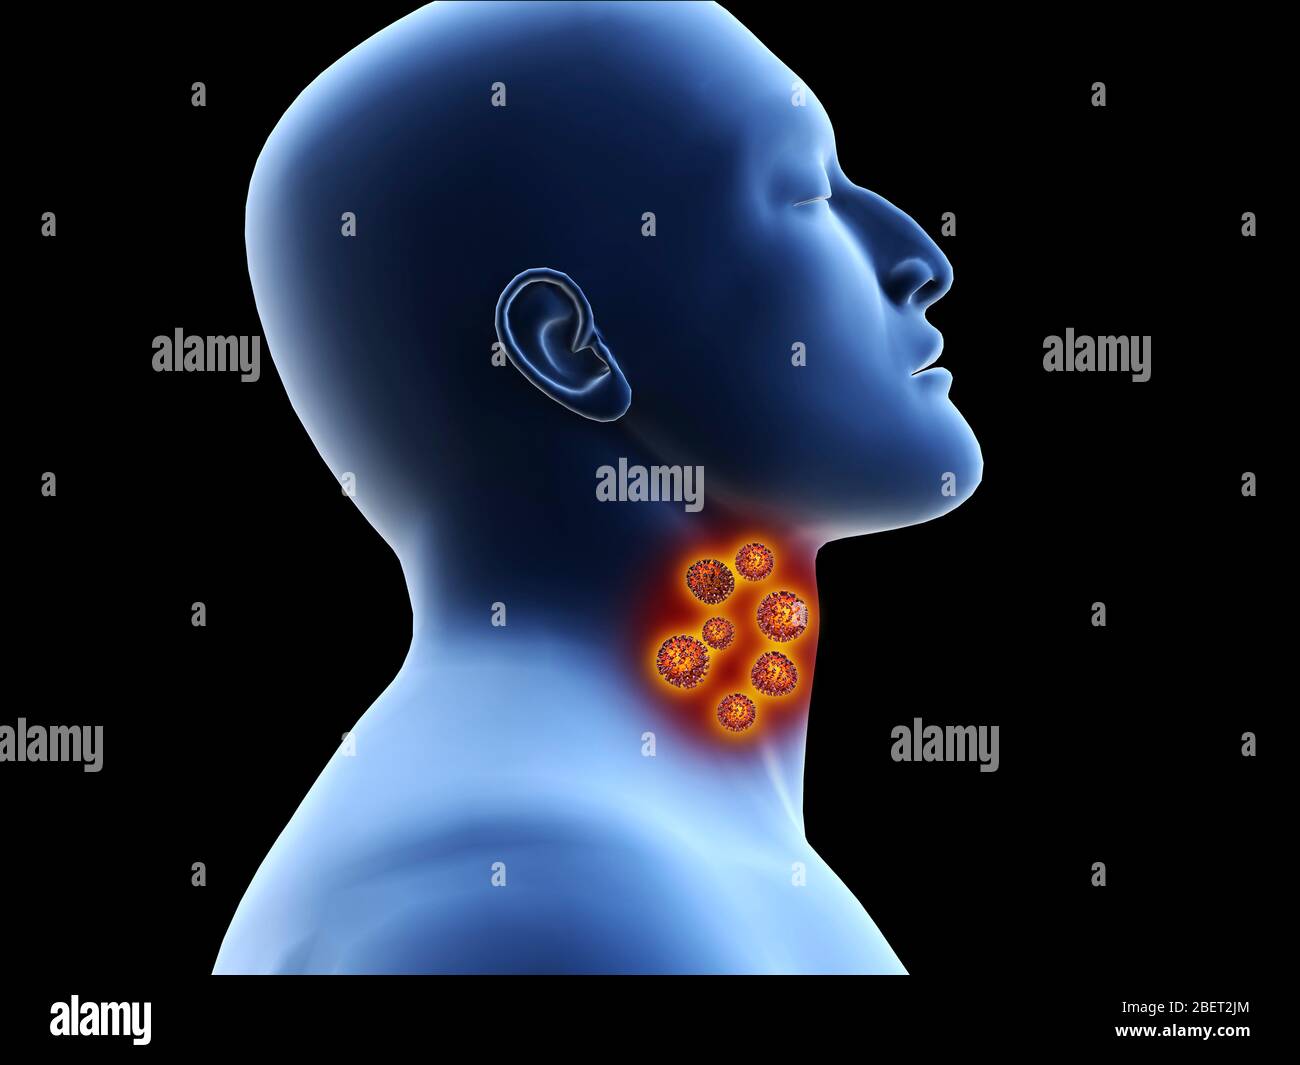 Illustratives Konzept des Coronavirus in der menschlichen Kehle, bevor es in die Lunge gelangt. Stockfoto